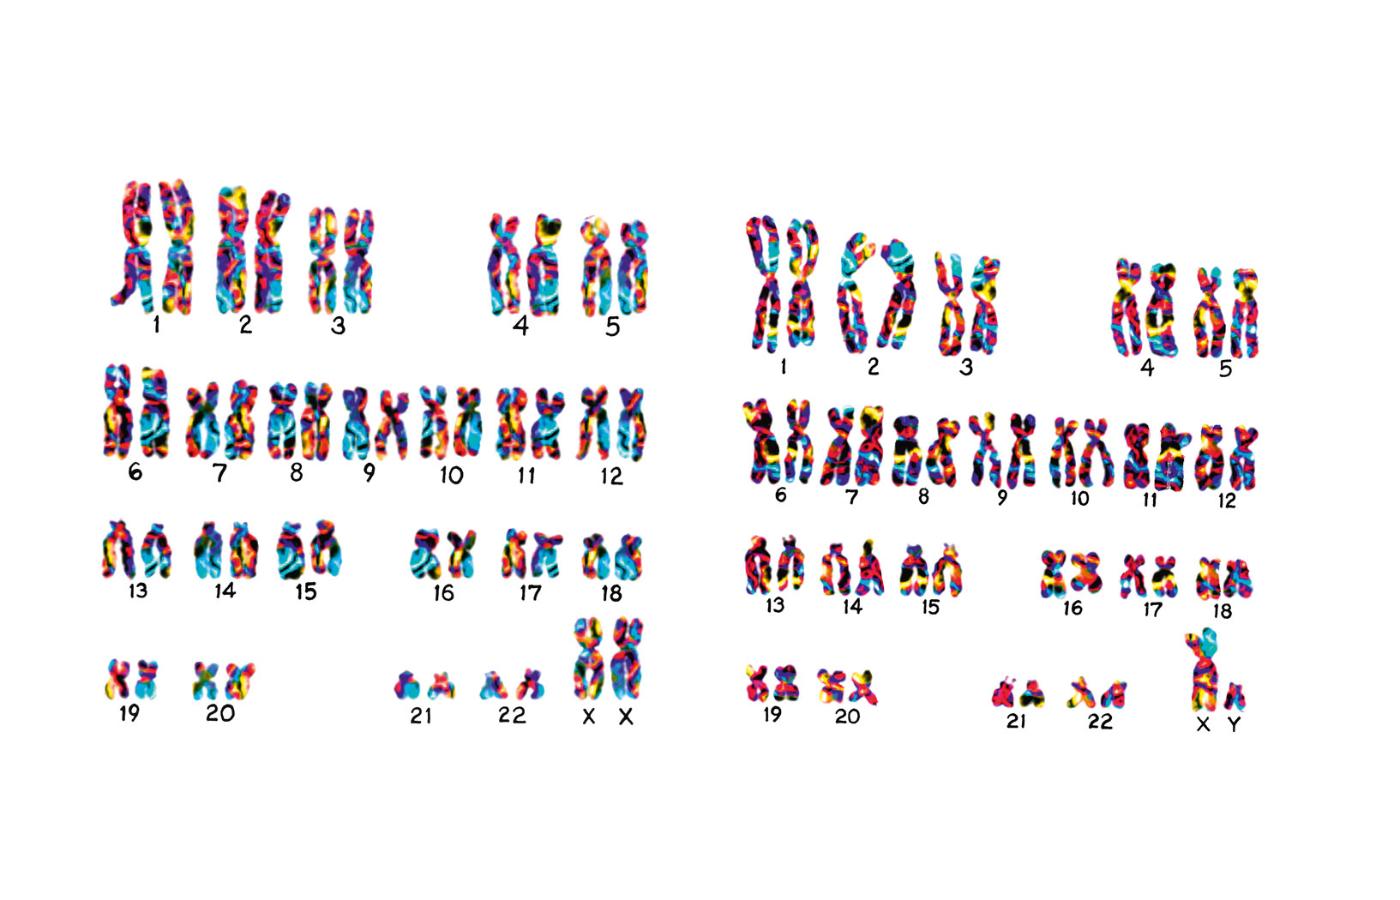 Kariotyp (kompletny zestaw chromosomów komórki somatycznej organizmu) kobiety (z lewej) i mężczyzny.